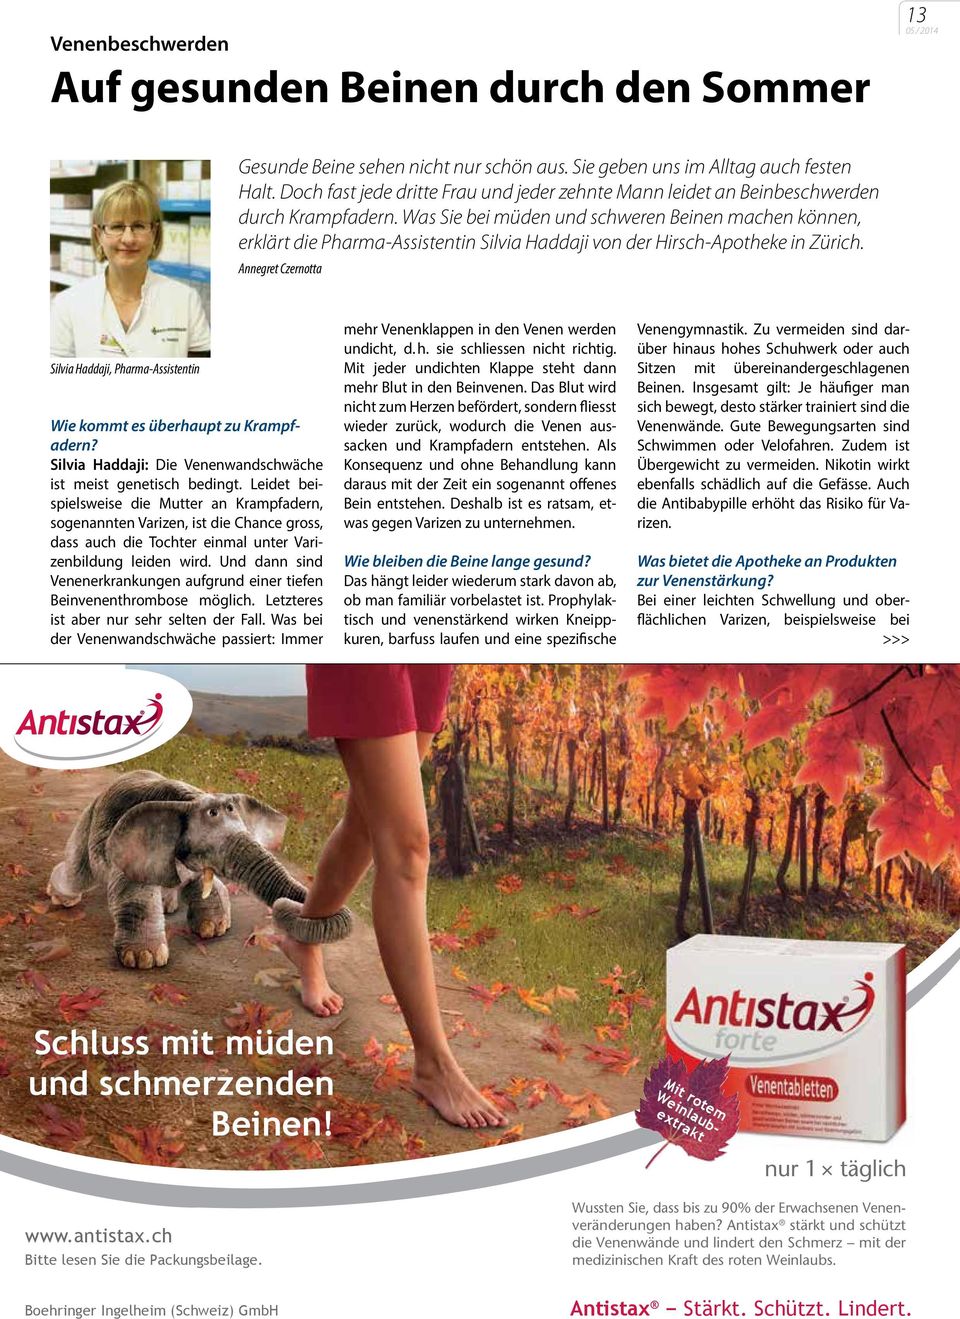 Was Sie bei müden und schweren Beinen machen können, erklärt die Pharma-Assistentin Silvia Haddaji von der Hirsch-Apotheke in Zürich.